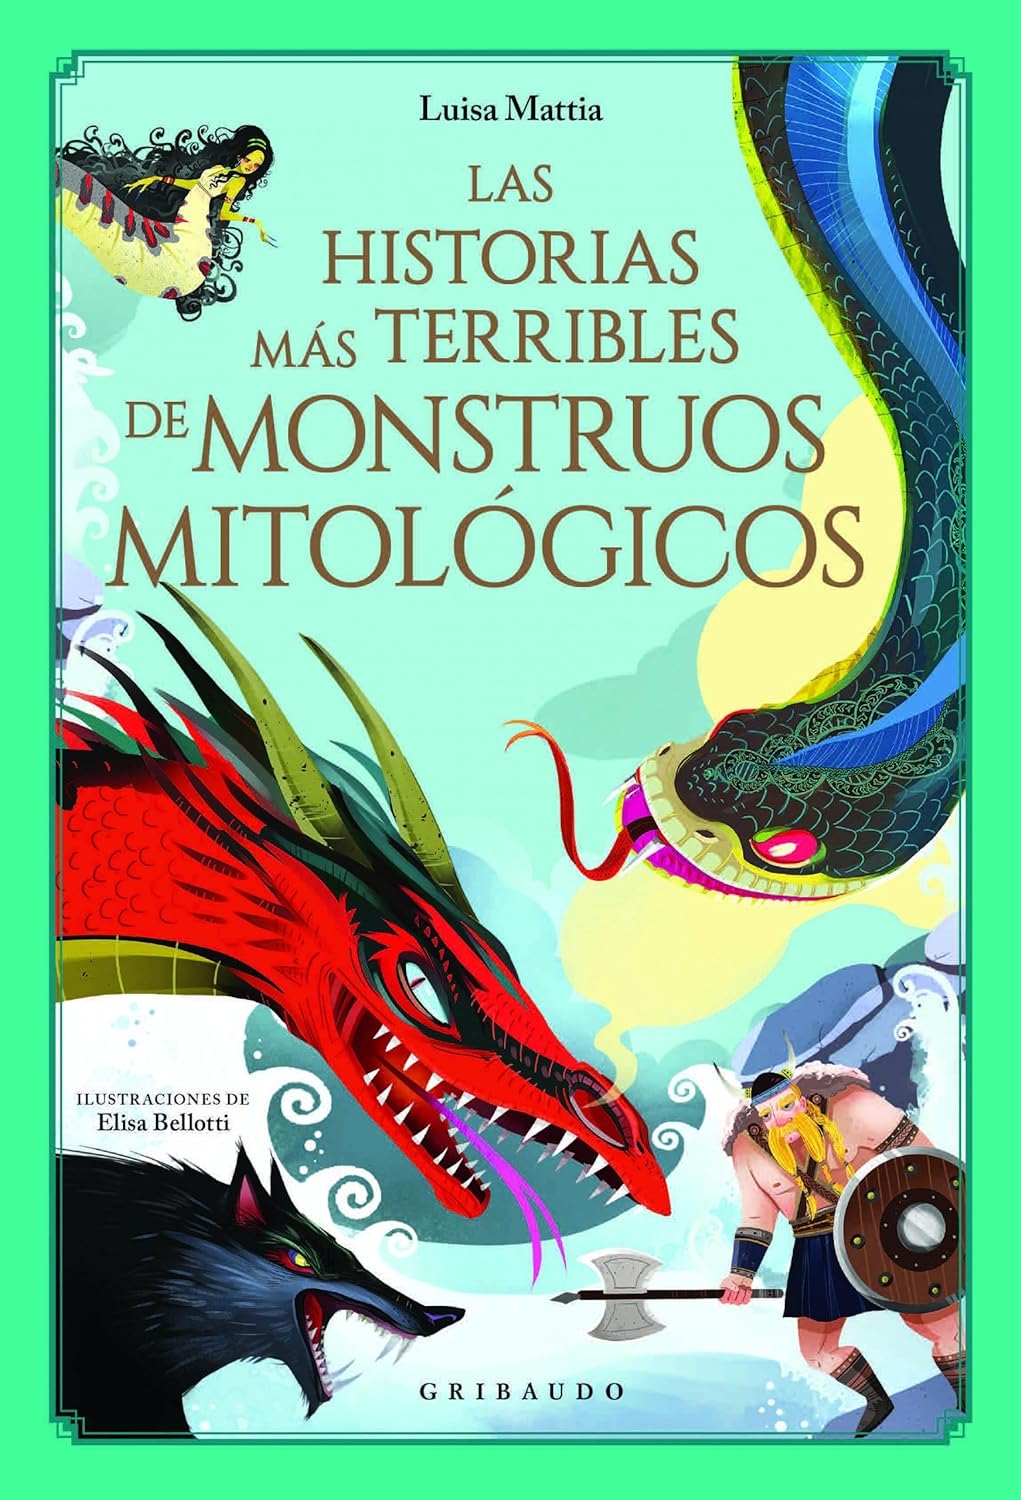 Las historias más terribles de monstruos mitológicos (Spanish Edition) Hardcover